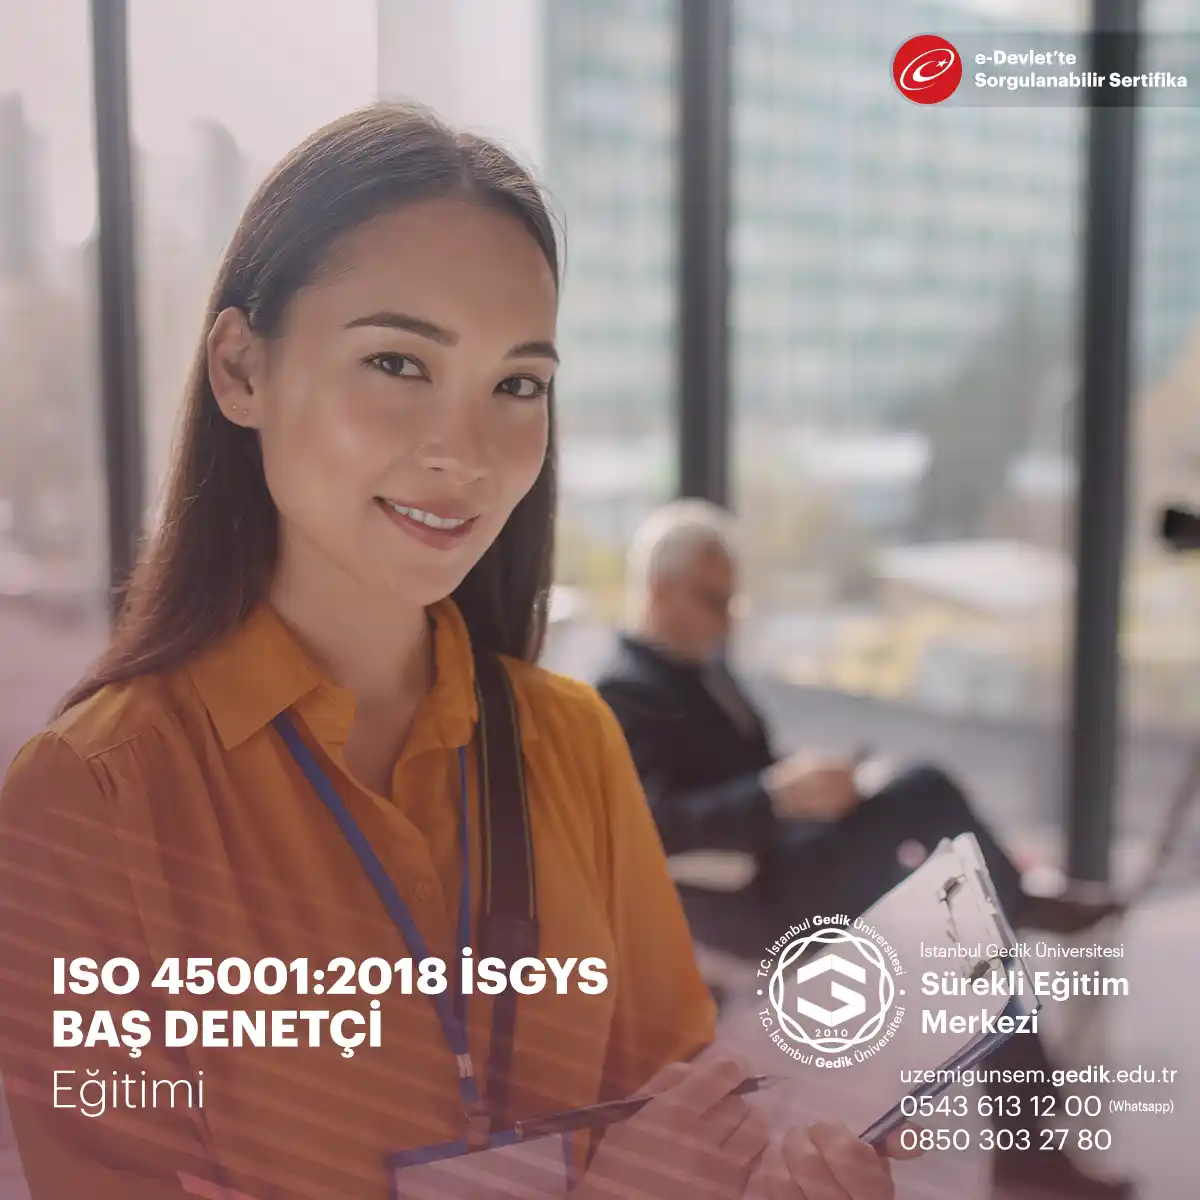 Bu Kurs ISO45001:2018 İSGYS Standardınınz tüm şartlarını yerine getirir ve eğitimi alan kişiye etkili bir denetim ve denetime liderlik etme imkanı tanır.